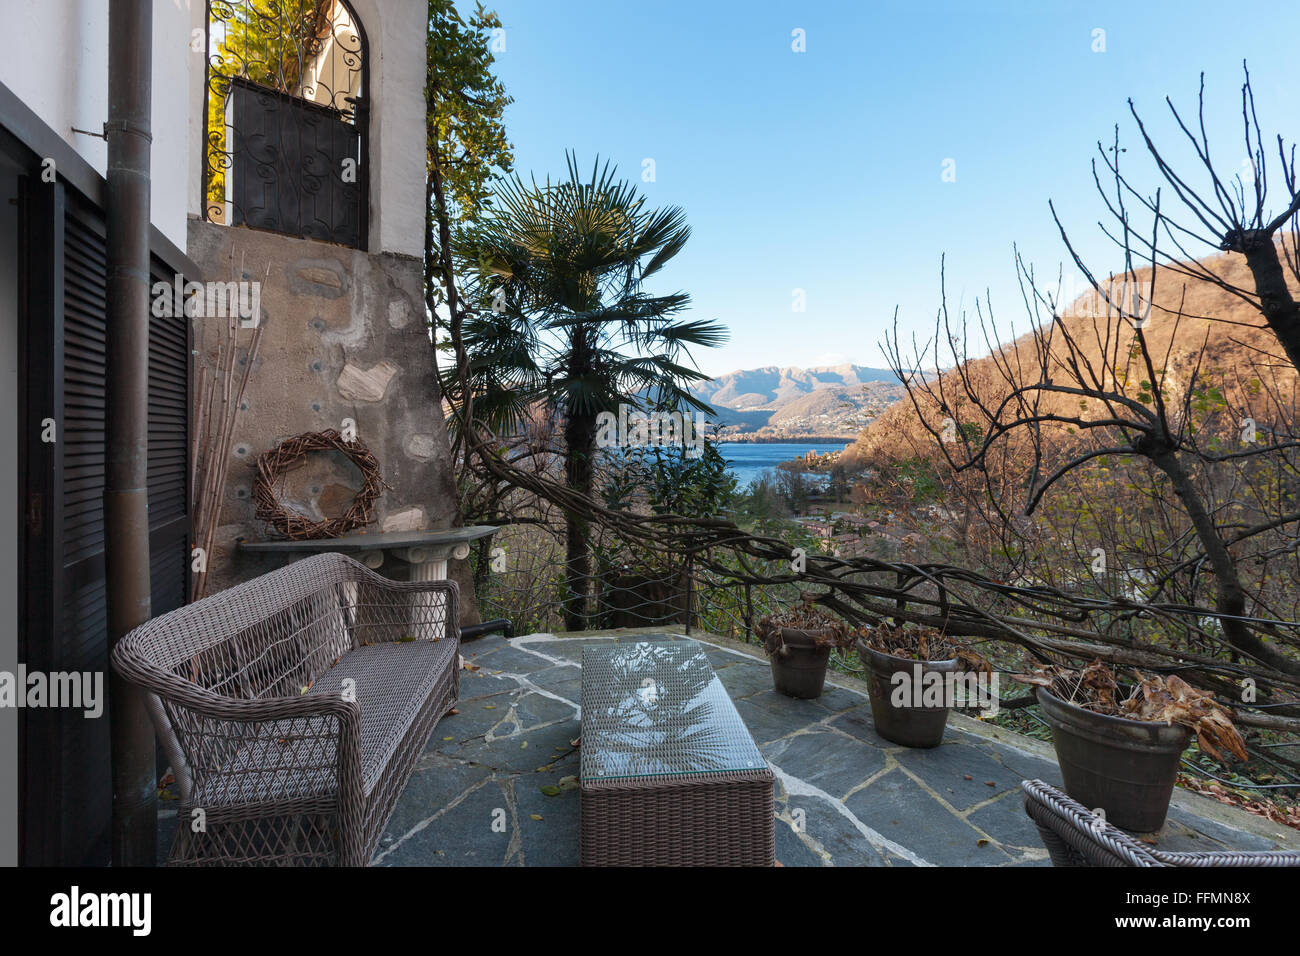 Casa bella terrazza con mobili da giardino, pietre per pavimentazione Foto Stock